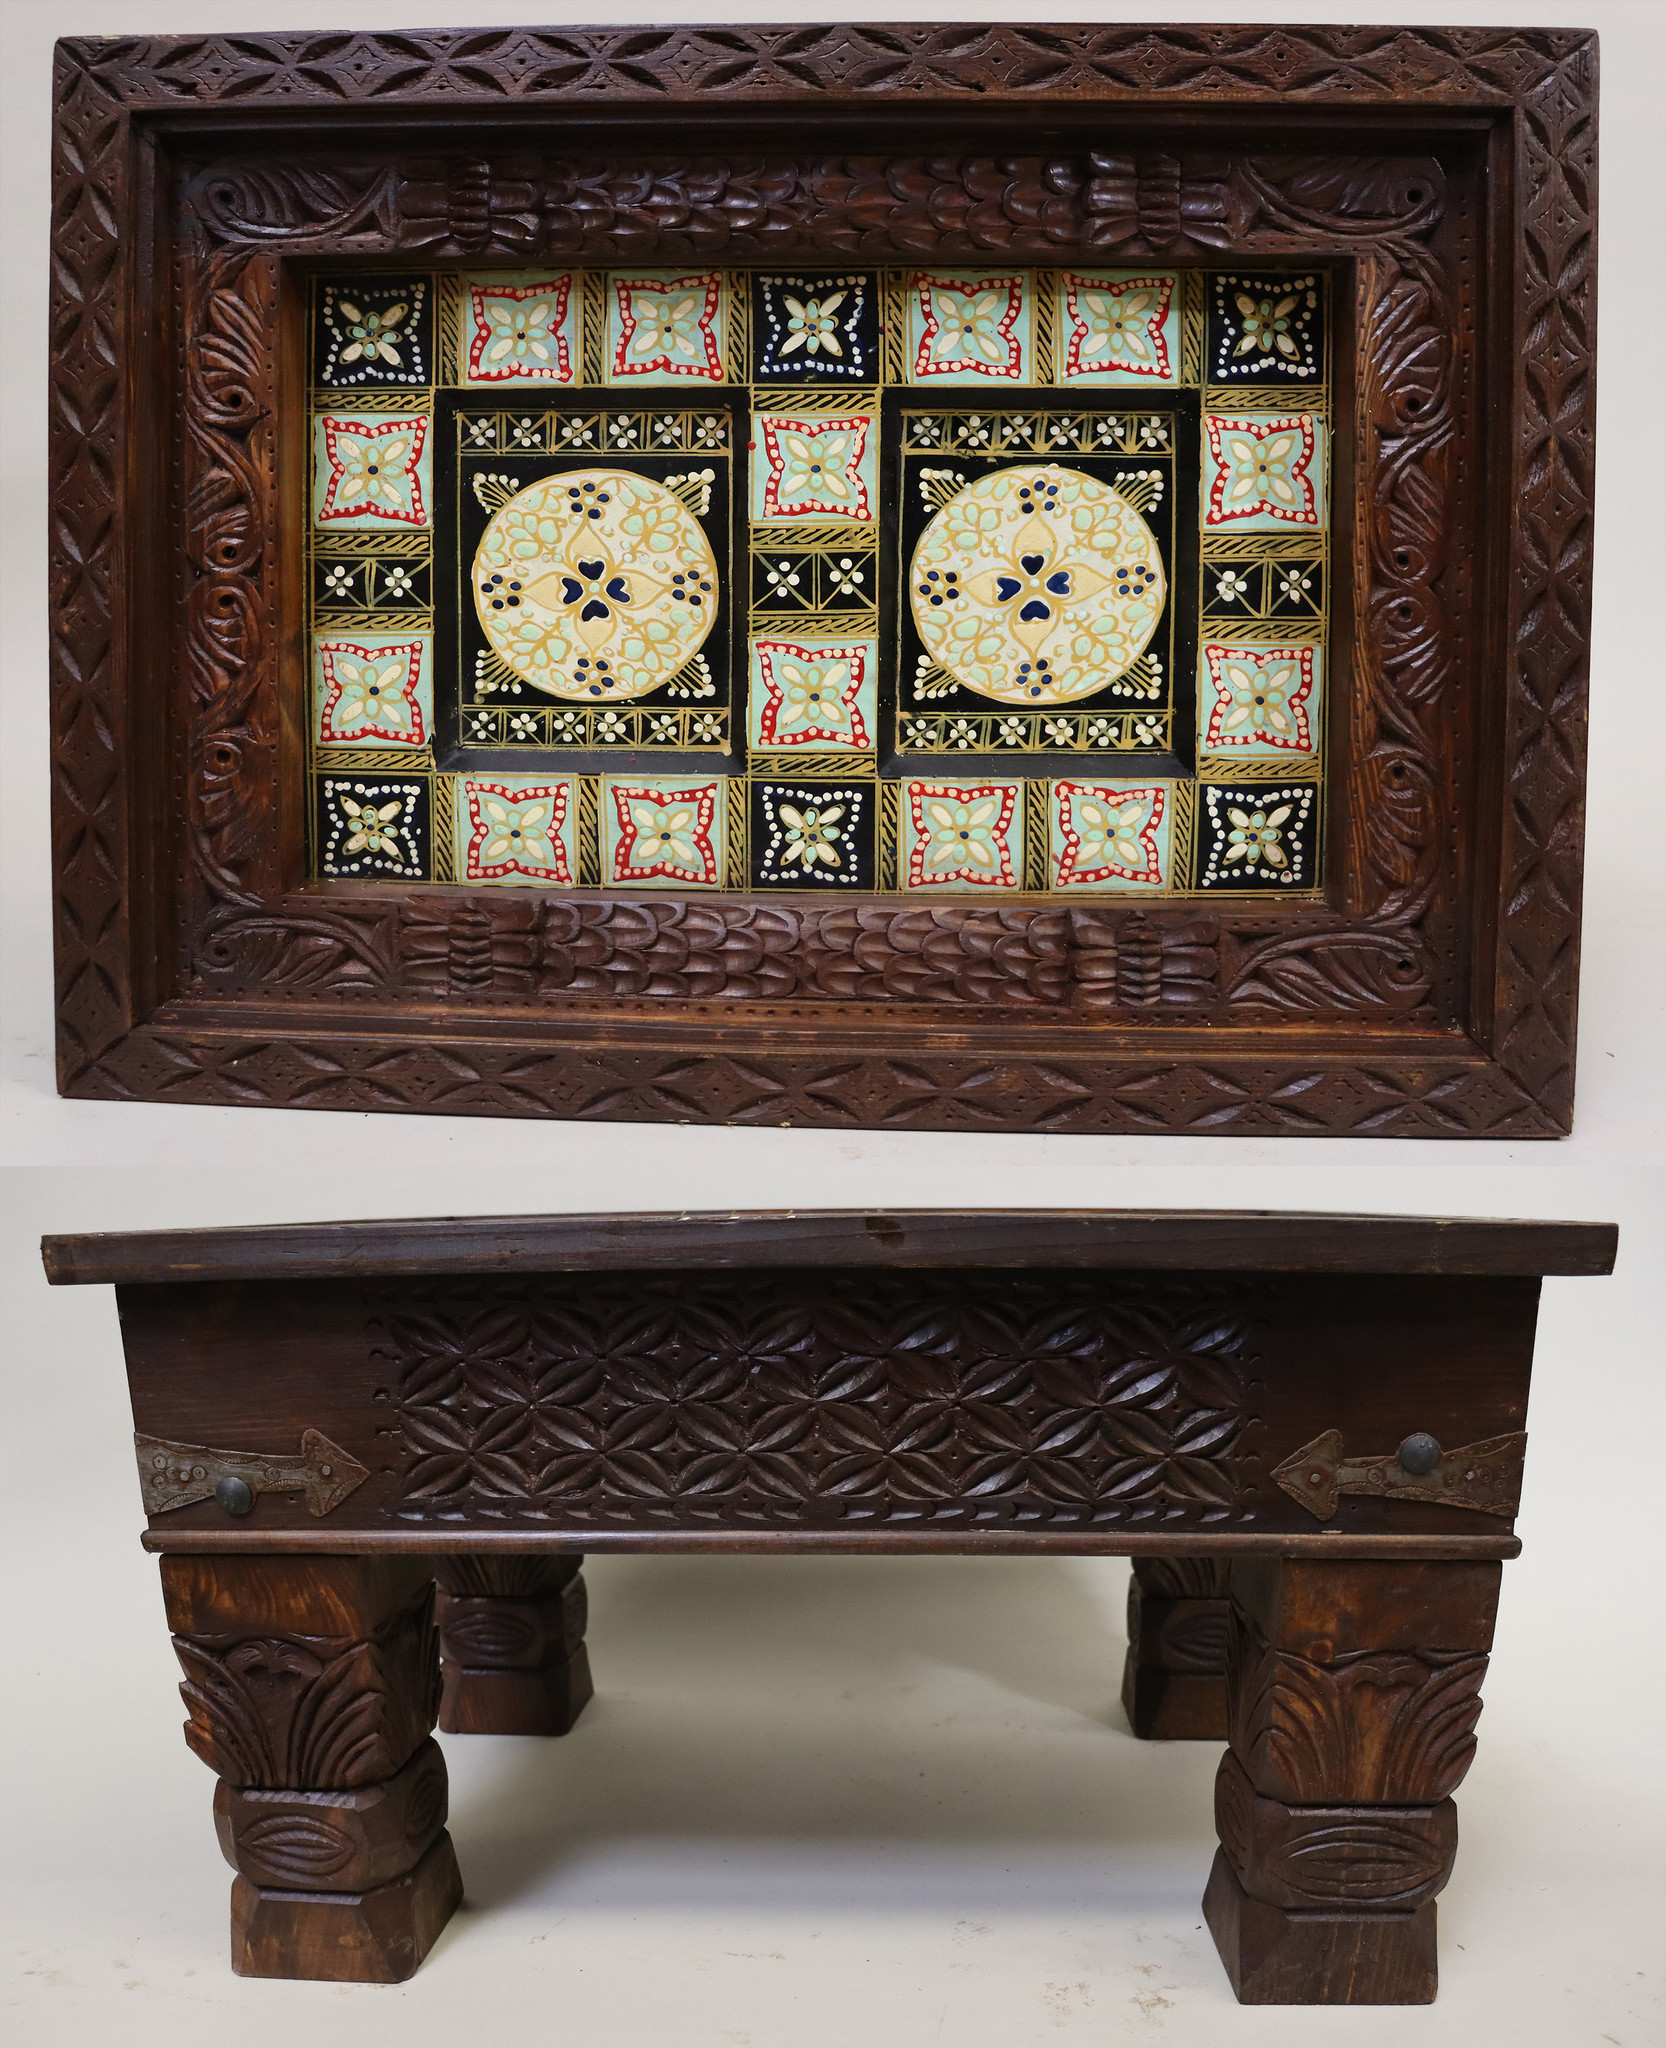 80x60 cm handgeschnitzt massivholz kolonialstil Wohnzimmertisch Tisch Couchtisch aus Afghanistan Nuristan Nr:23-3